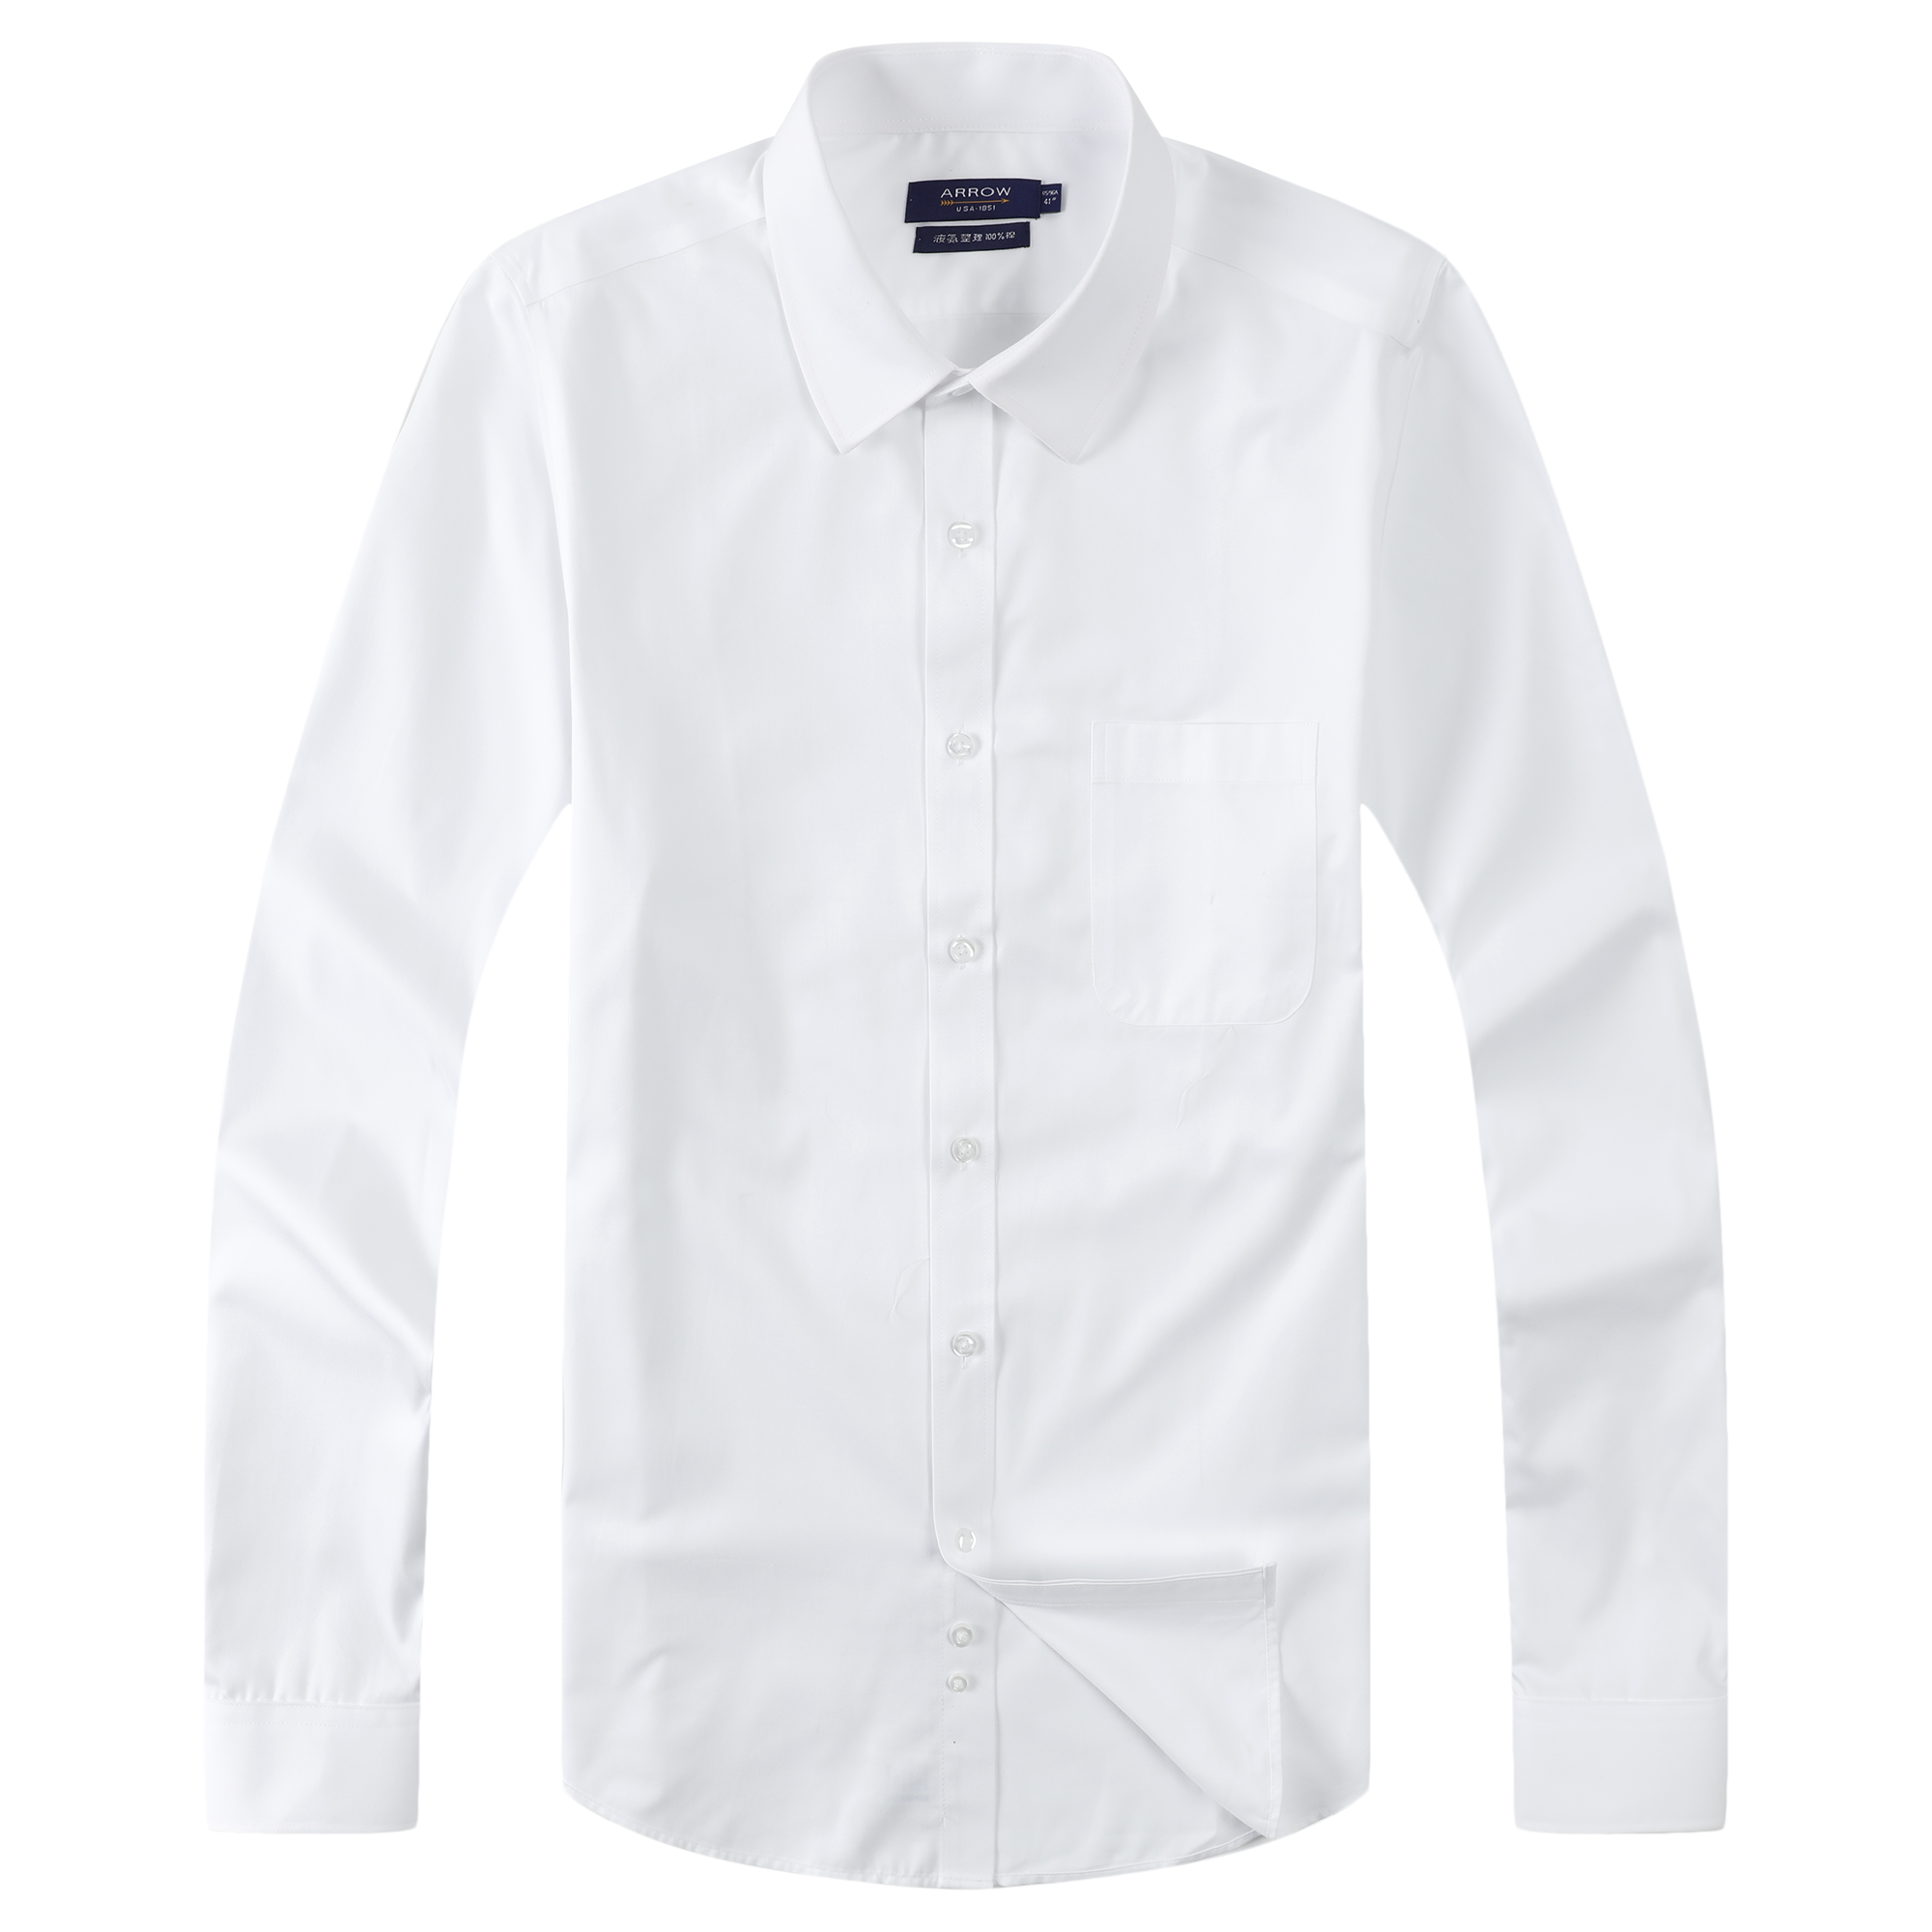 正品arrow衬衫美国箭牌衬衫 男长袖纯棉衬衣液氨整理免烫衬衫白色